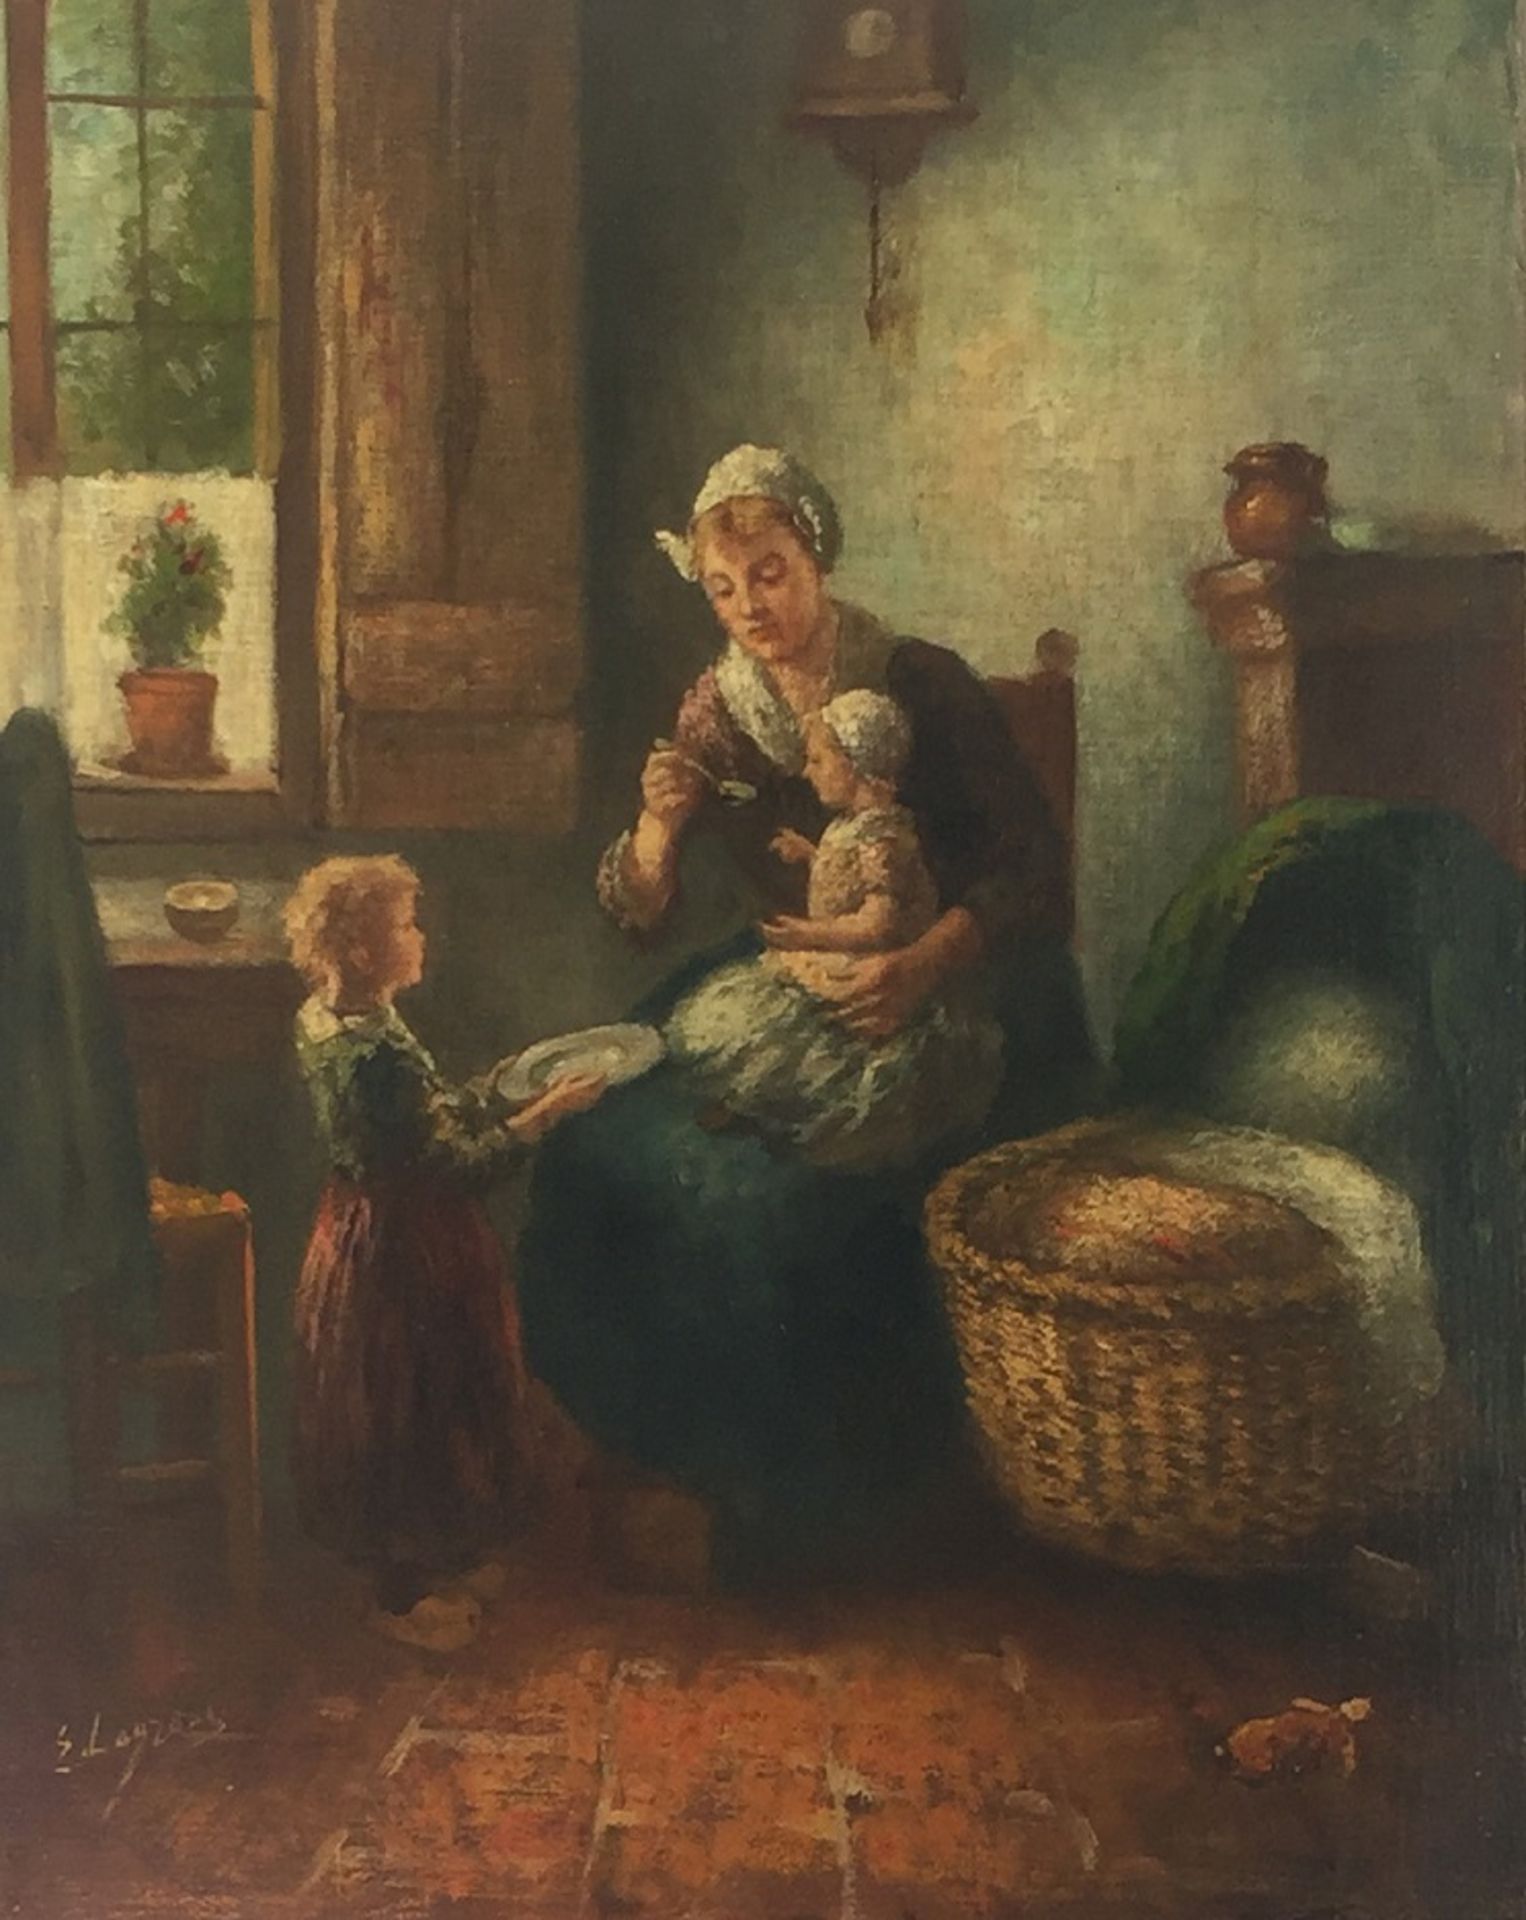 Larense School, 20e eeuw. Moeders kleine helpertje. Olieverf op doek. Gesigneerd "E. Laurens"